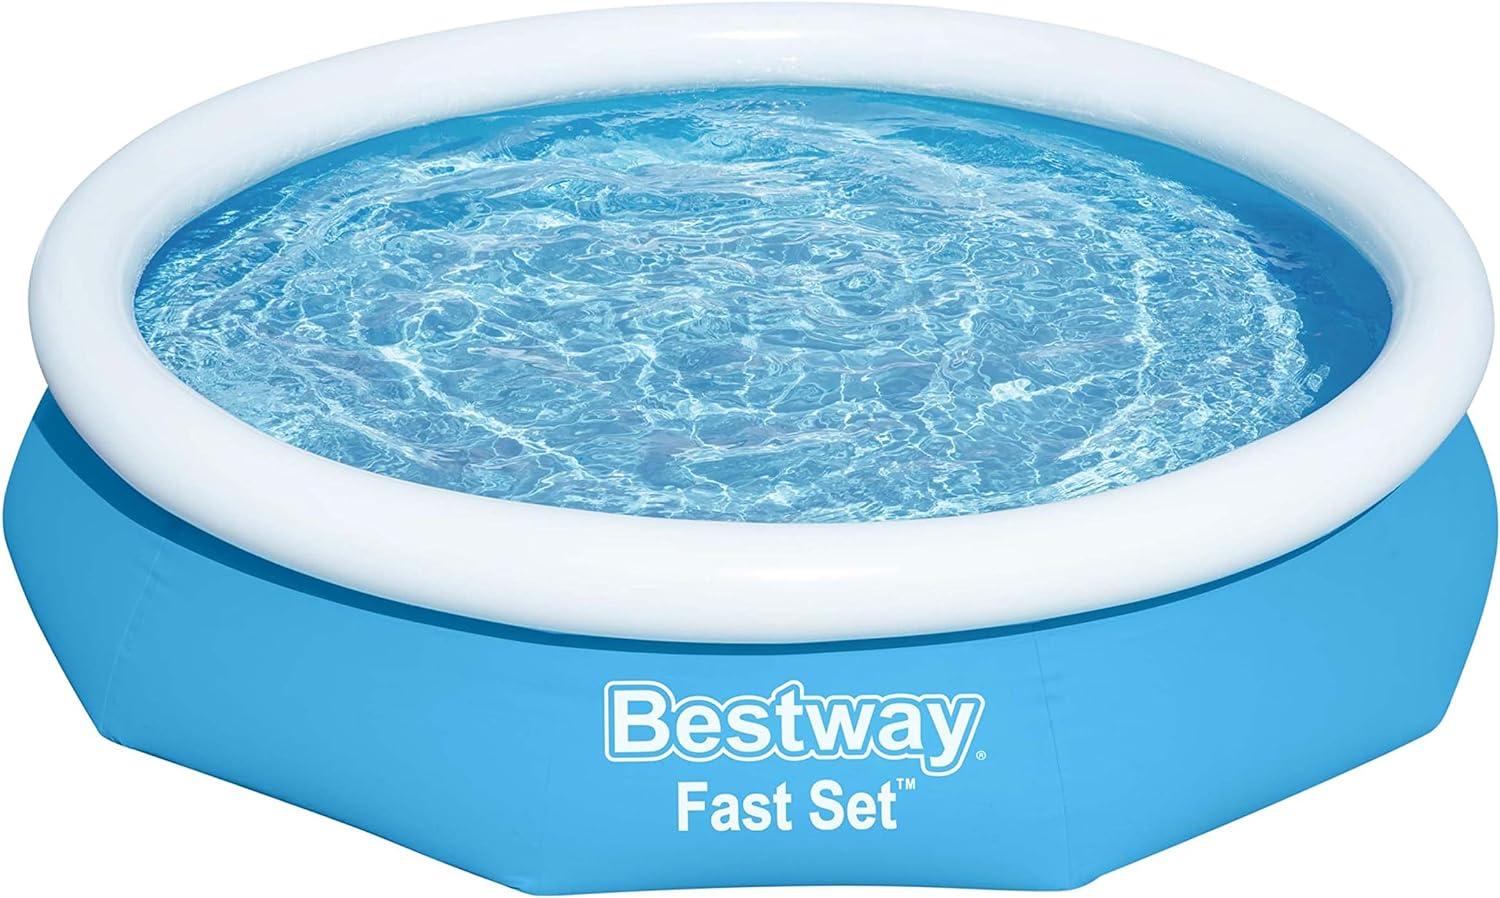 Bestway Fast Set Pool 305cm Bild 1